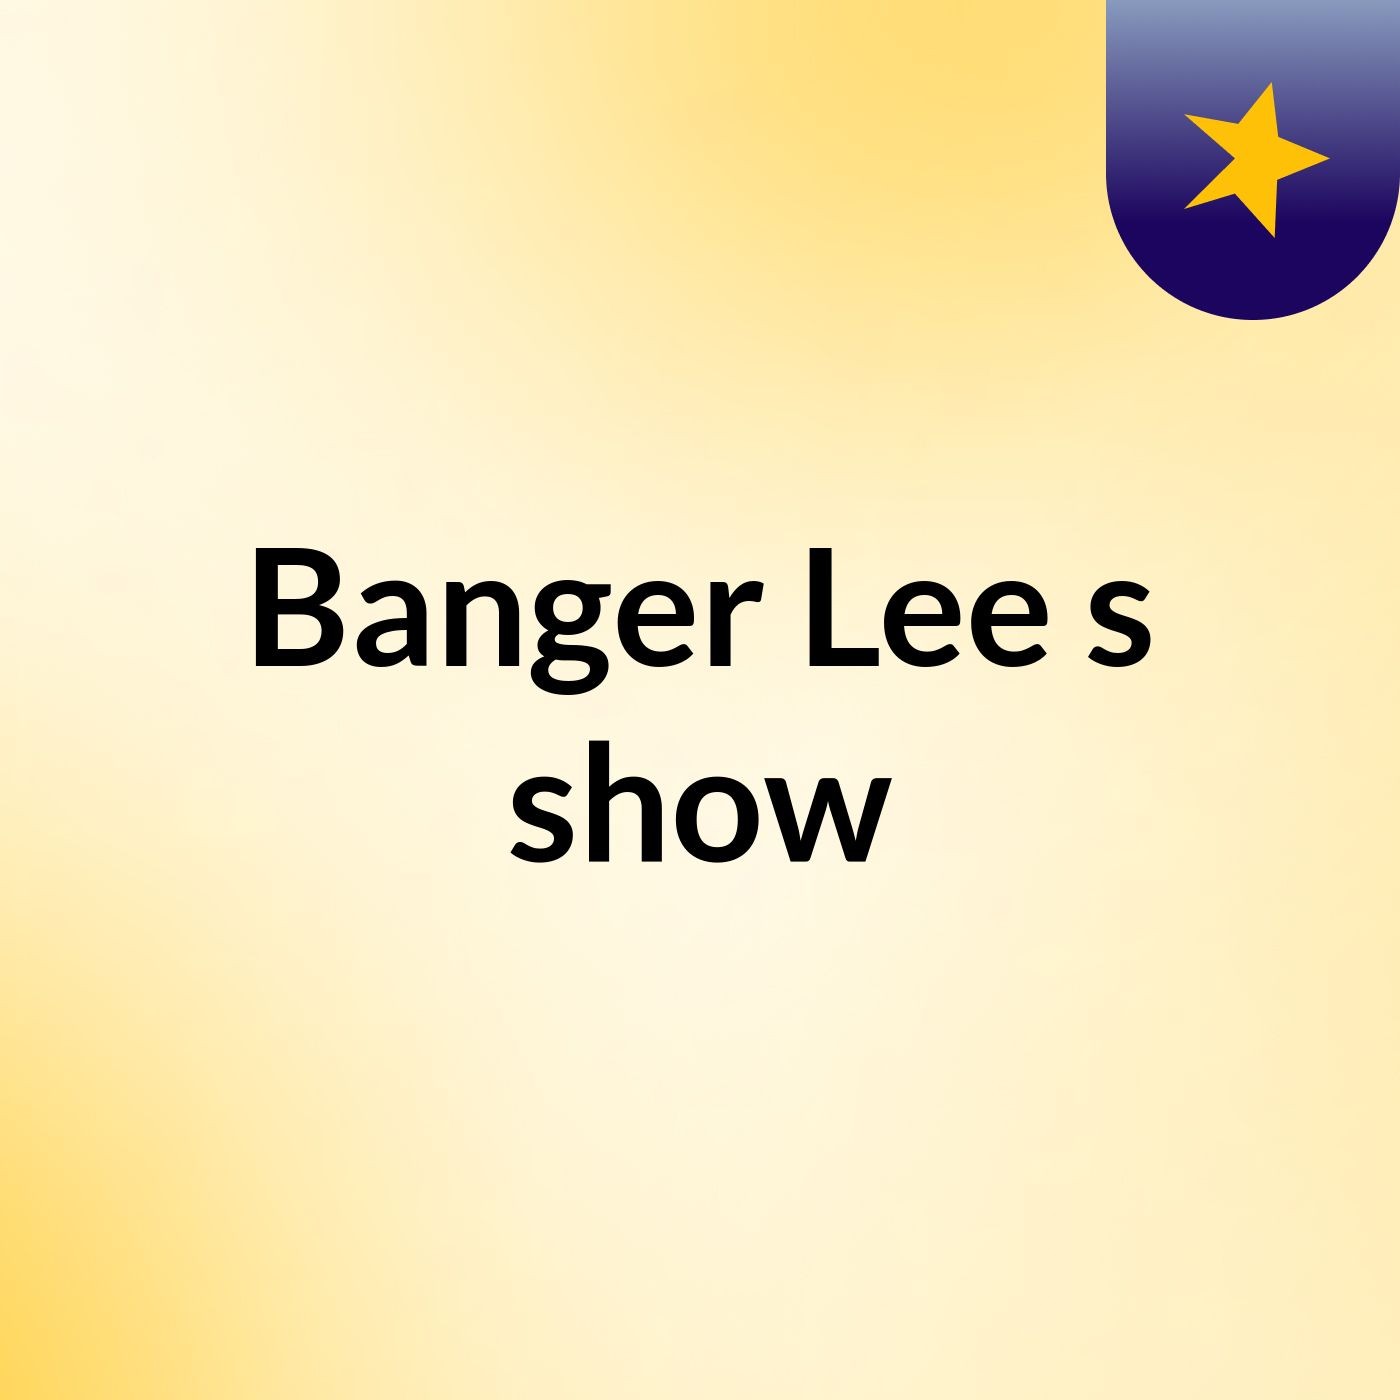 Banger Lee's show